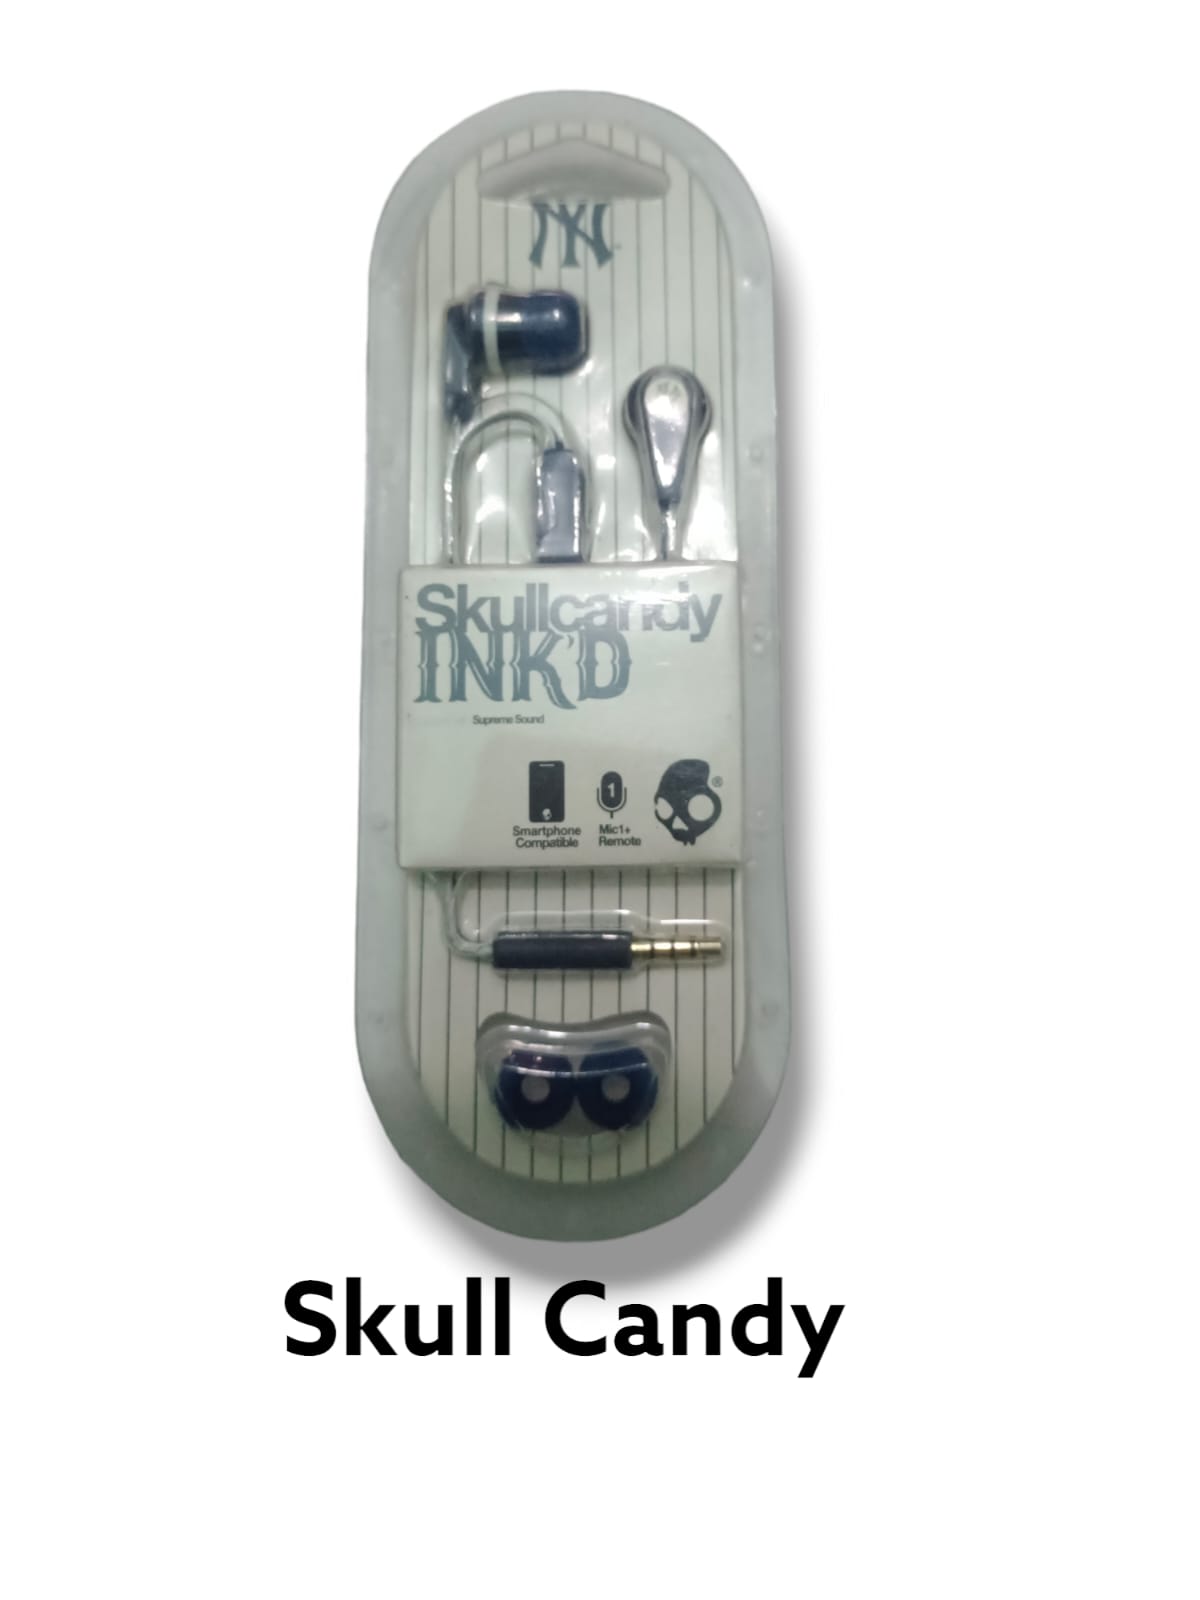 100% الأصلي الجمجمة كاندي يدوي Skullcandy jib Ink'd السلكية 3.5 مللي متر سماعات Skullcandy Ink'd + السلكية داخل الأذن سماعات مع هيئة التصنيع العسكري 